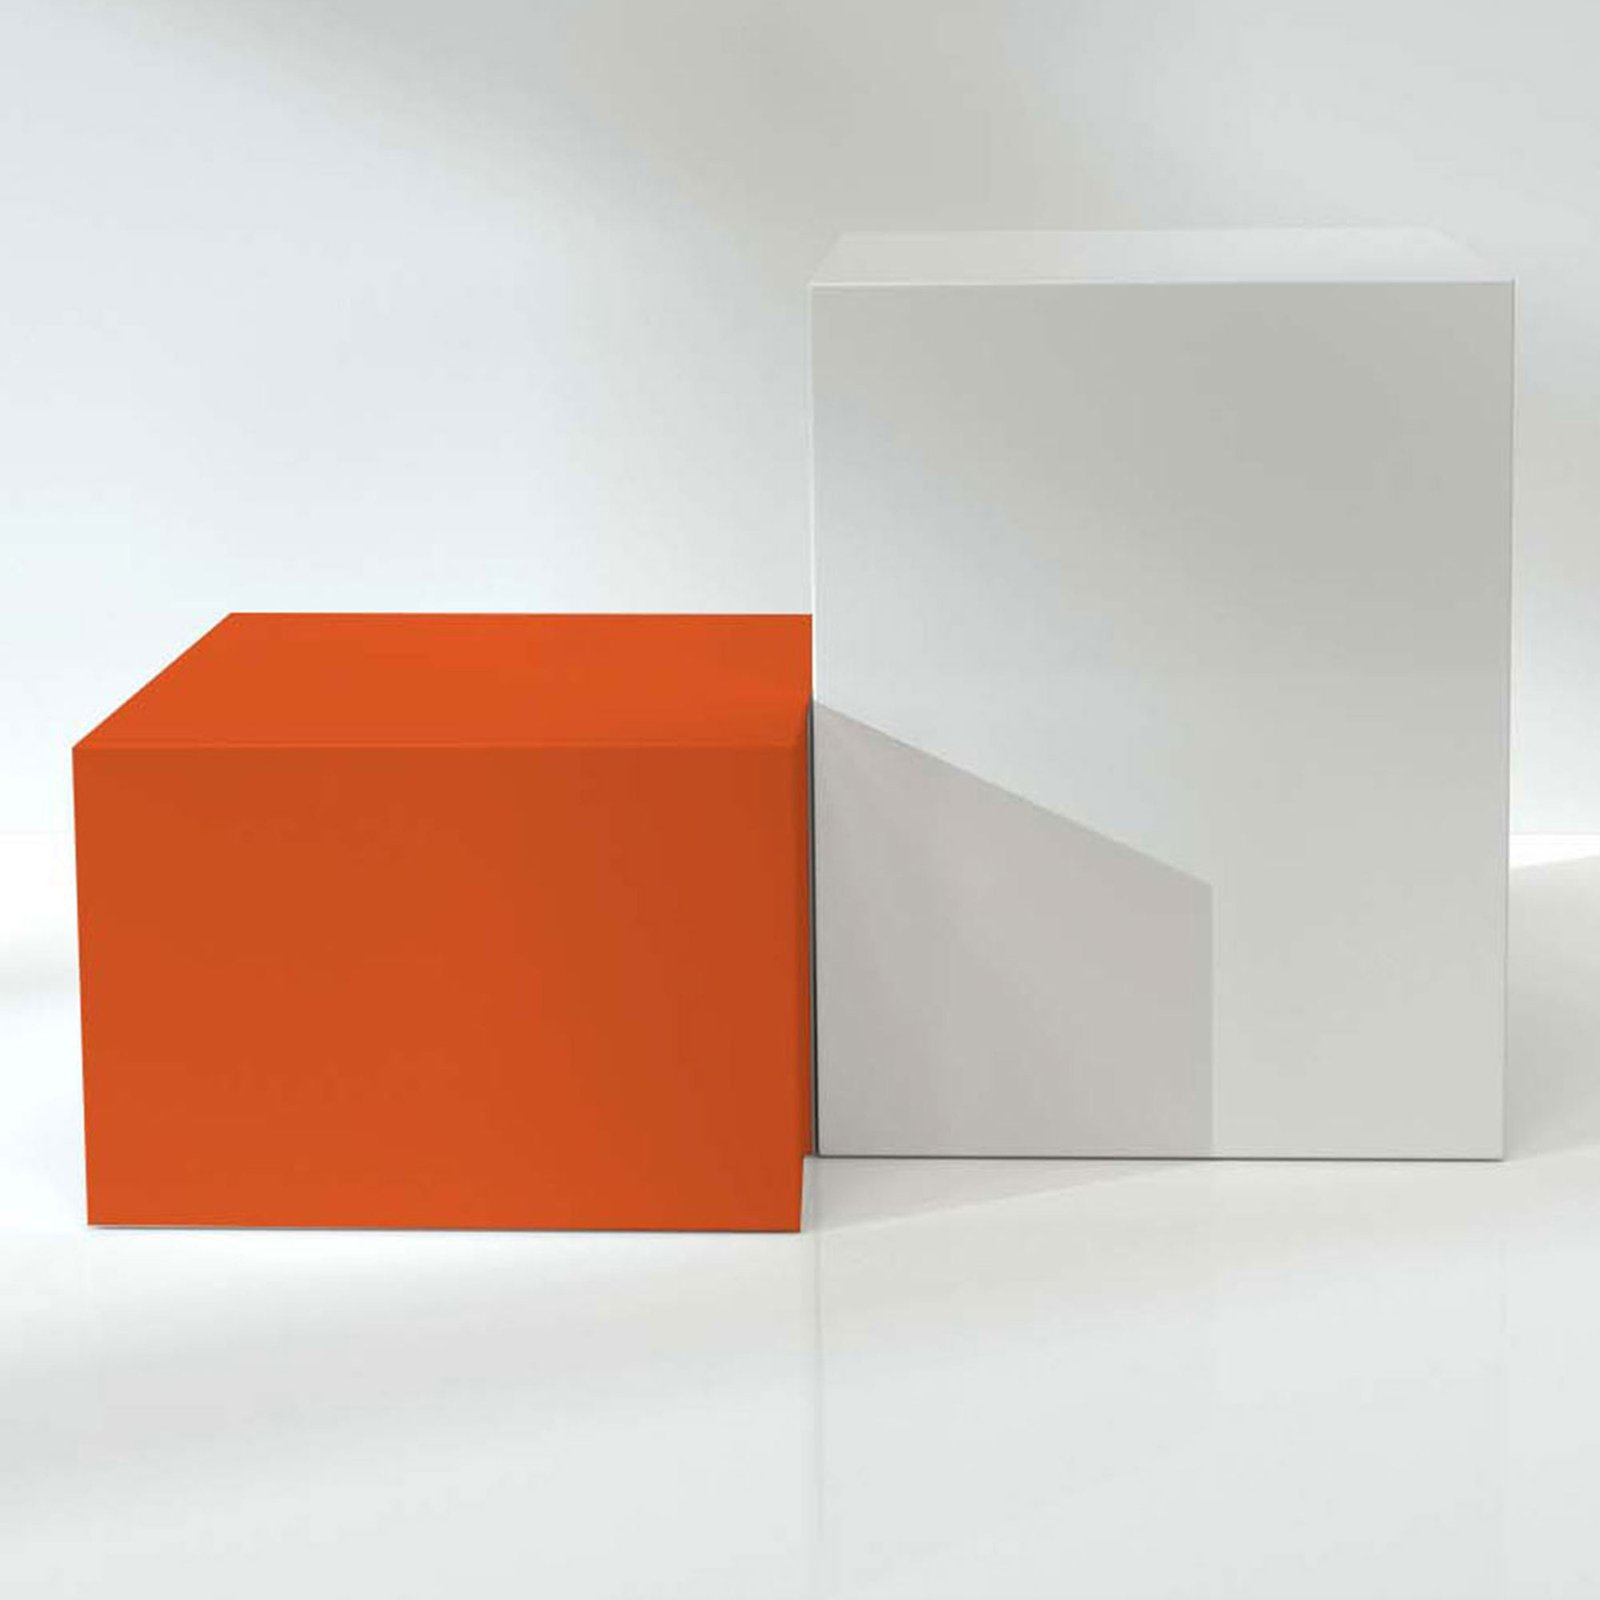 Ein kleiner orangener Klotz steht neben einem großen weißen Klotz auf spiegelnder Oberfläche